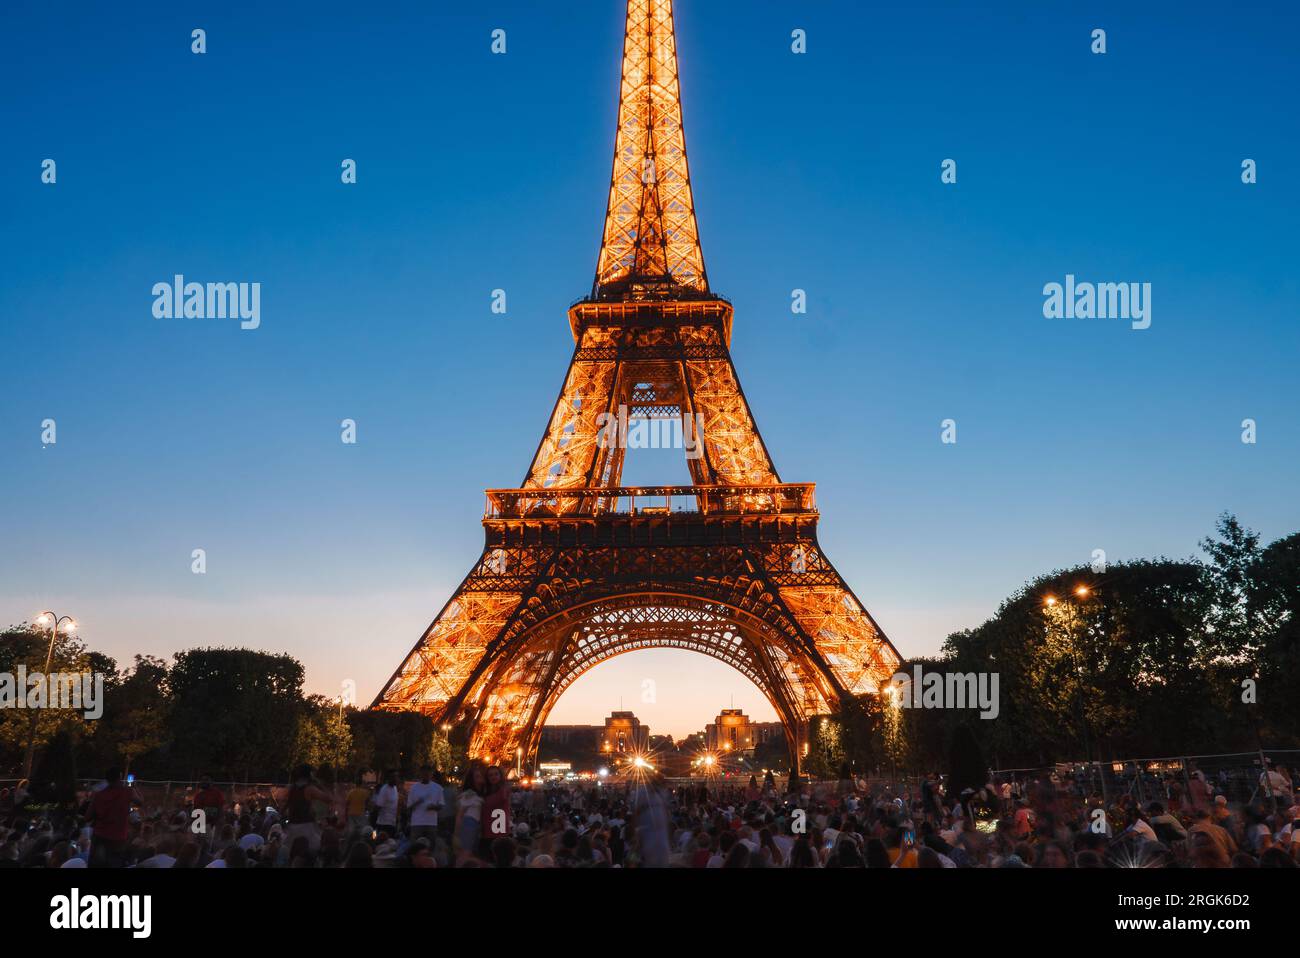 Illuminated Eiffel Tower at Night Stock Photo